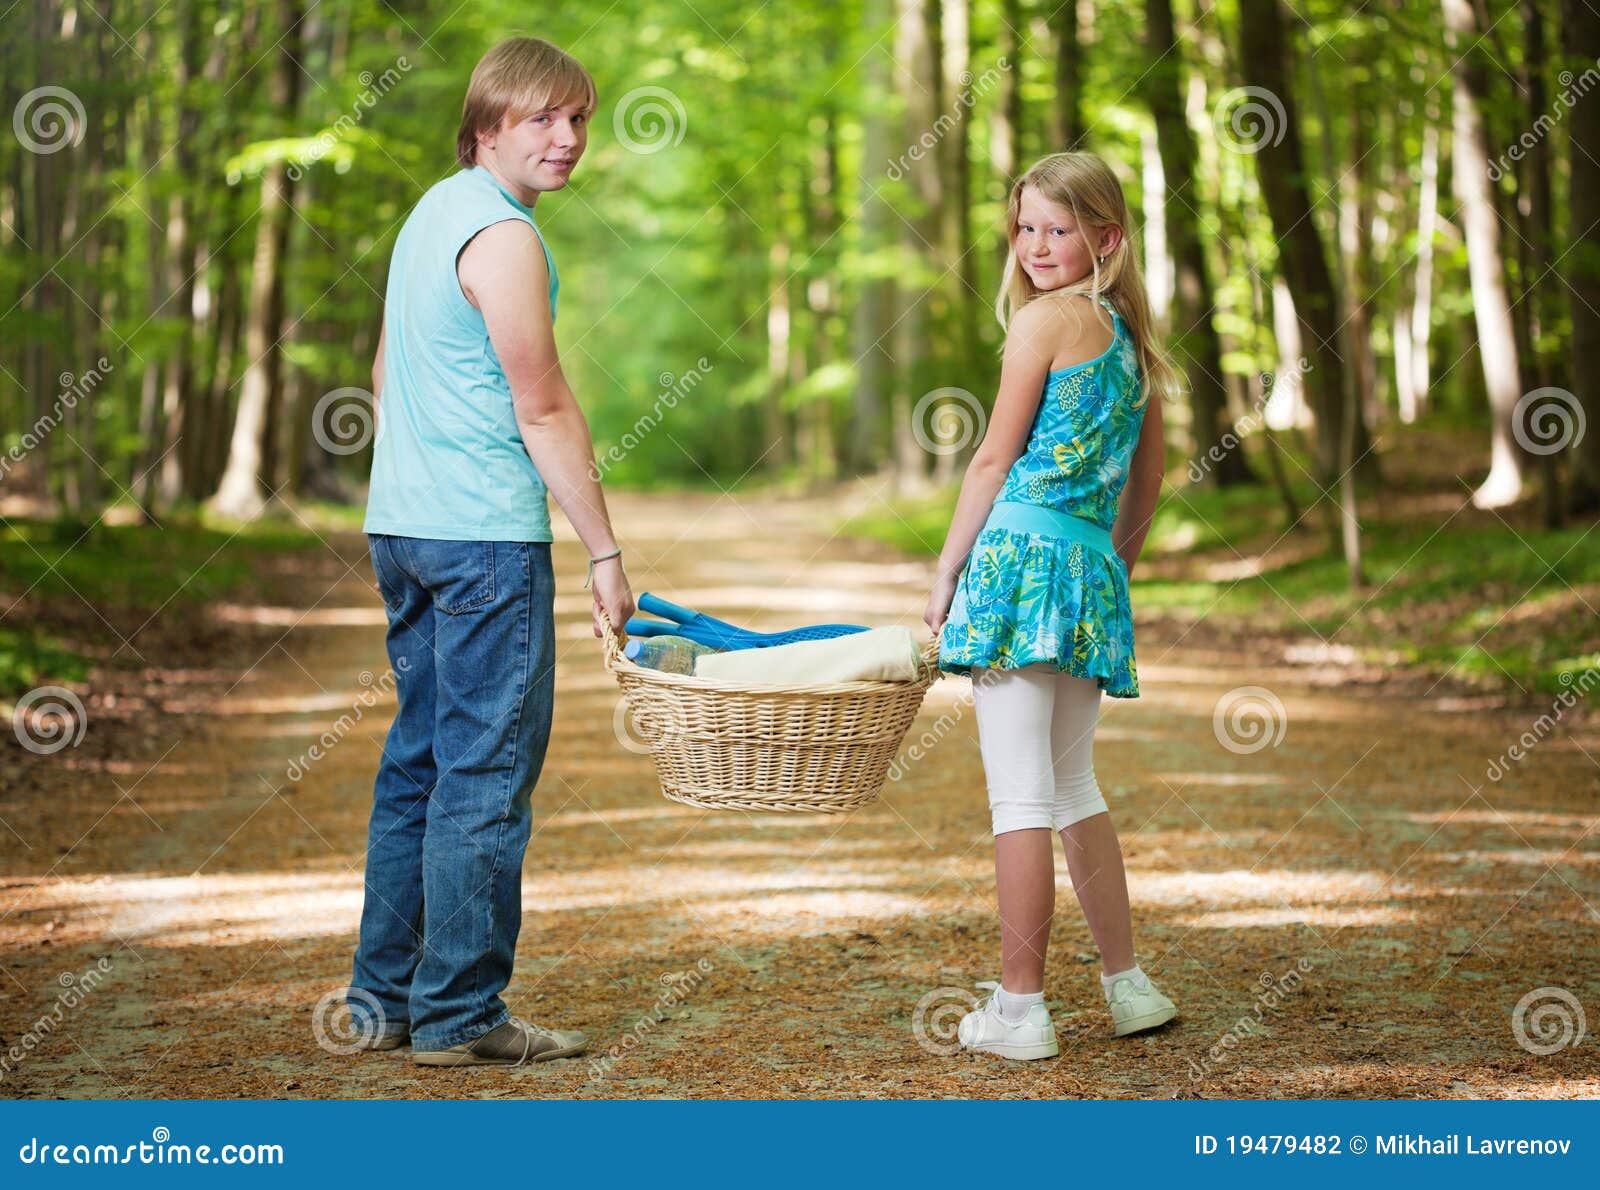 Пикник сестра. Девушки босиком на пикнике. Идут 2 девочки на пикник. Брат и сестра пикник. Одежда на пикник в лес летом для подростка.